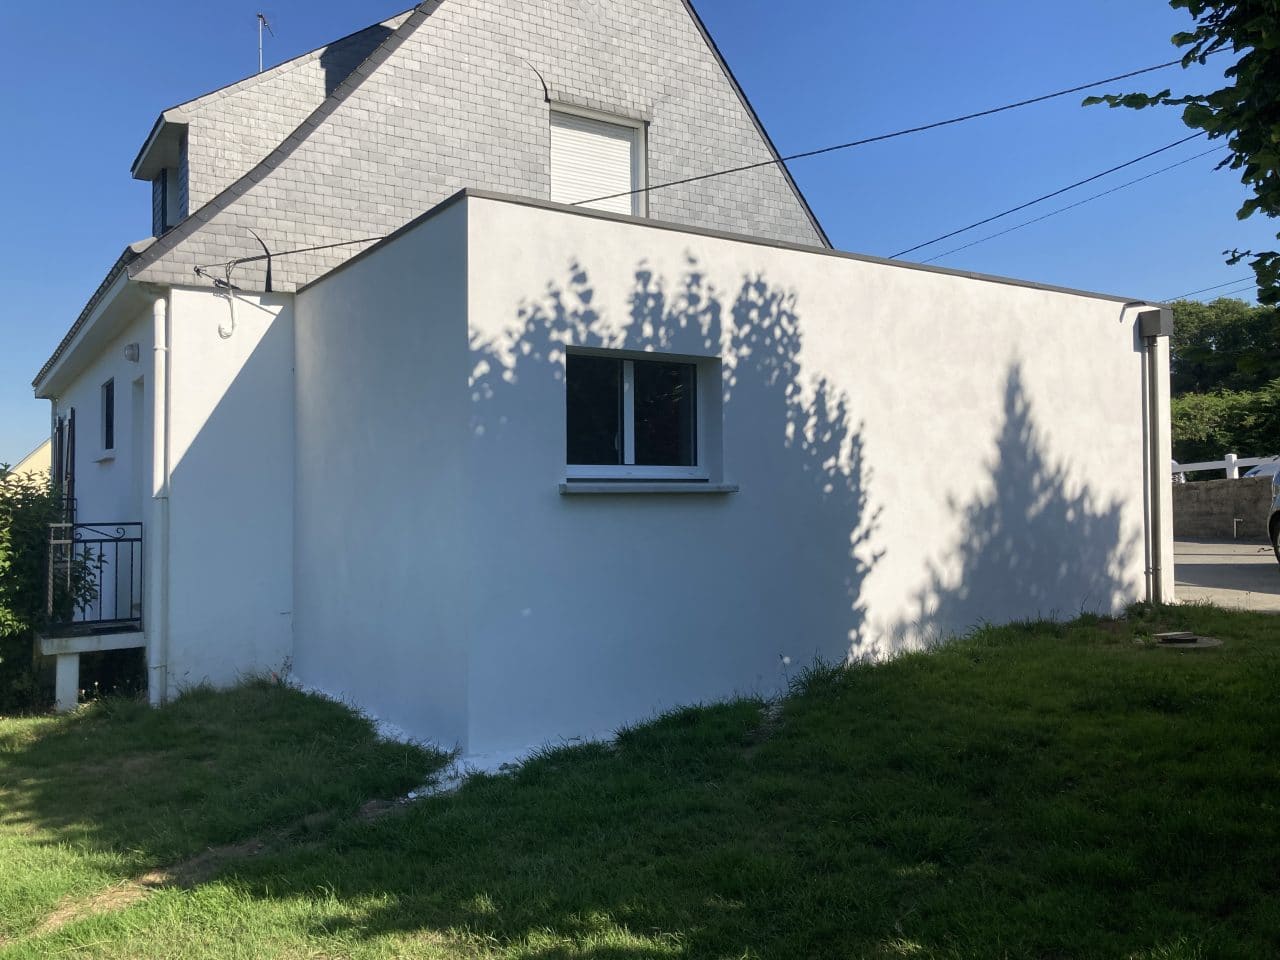 Extension de maison à toit plat pour un garage à Saint-Avé (56)